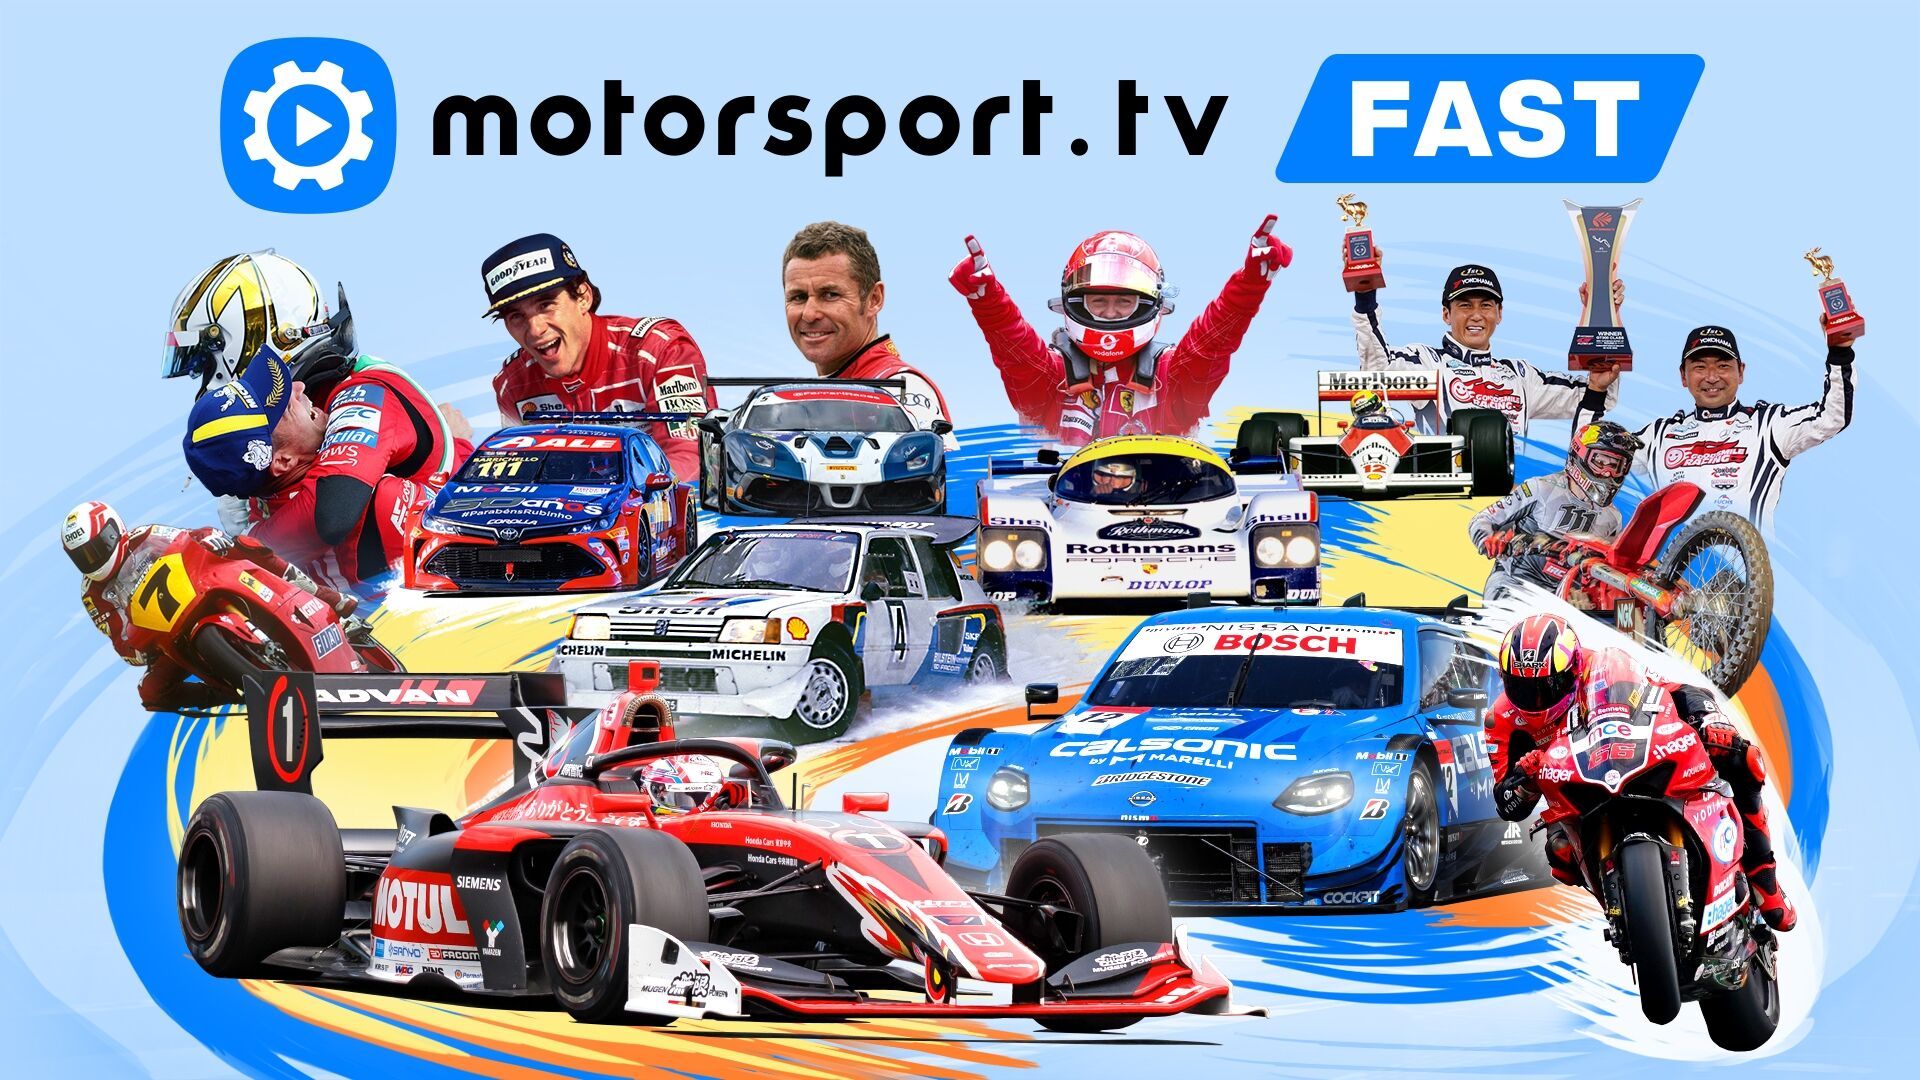 Live motorsport streaming on Motorsport